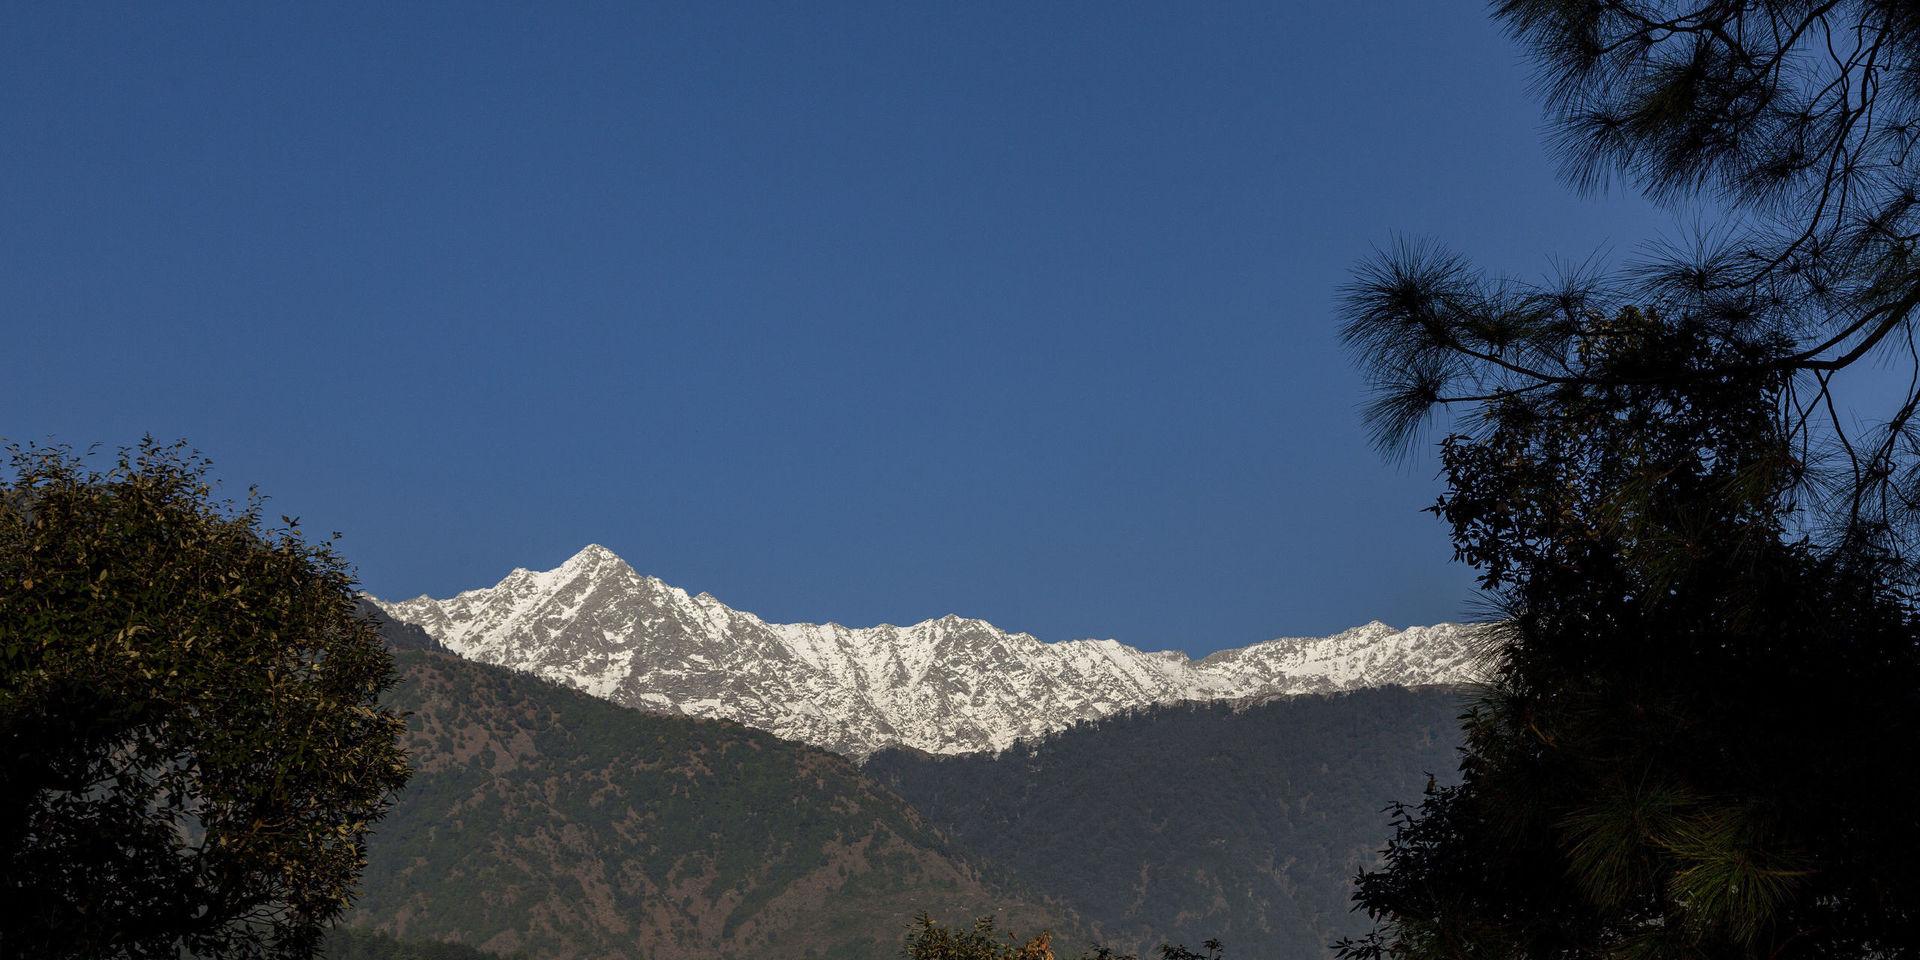 För första gången på 30 år kunde människor i norra Indien skåda bergstoppar från bergskedjan Himalaya. Bilden är tagen vid ett annat tillfälle och föreställer Dhauladhar, en del av bergskedjan Himalaya.